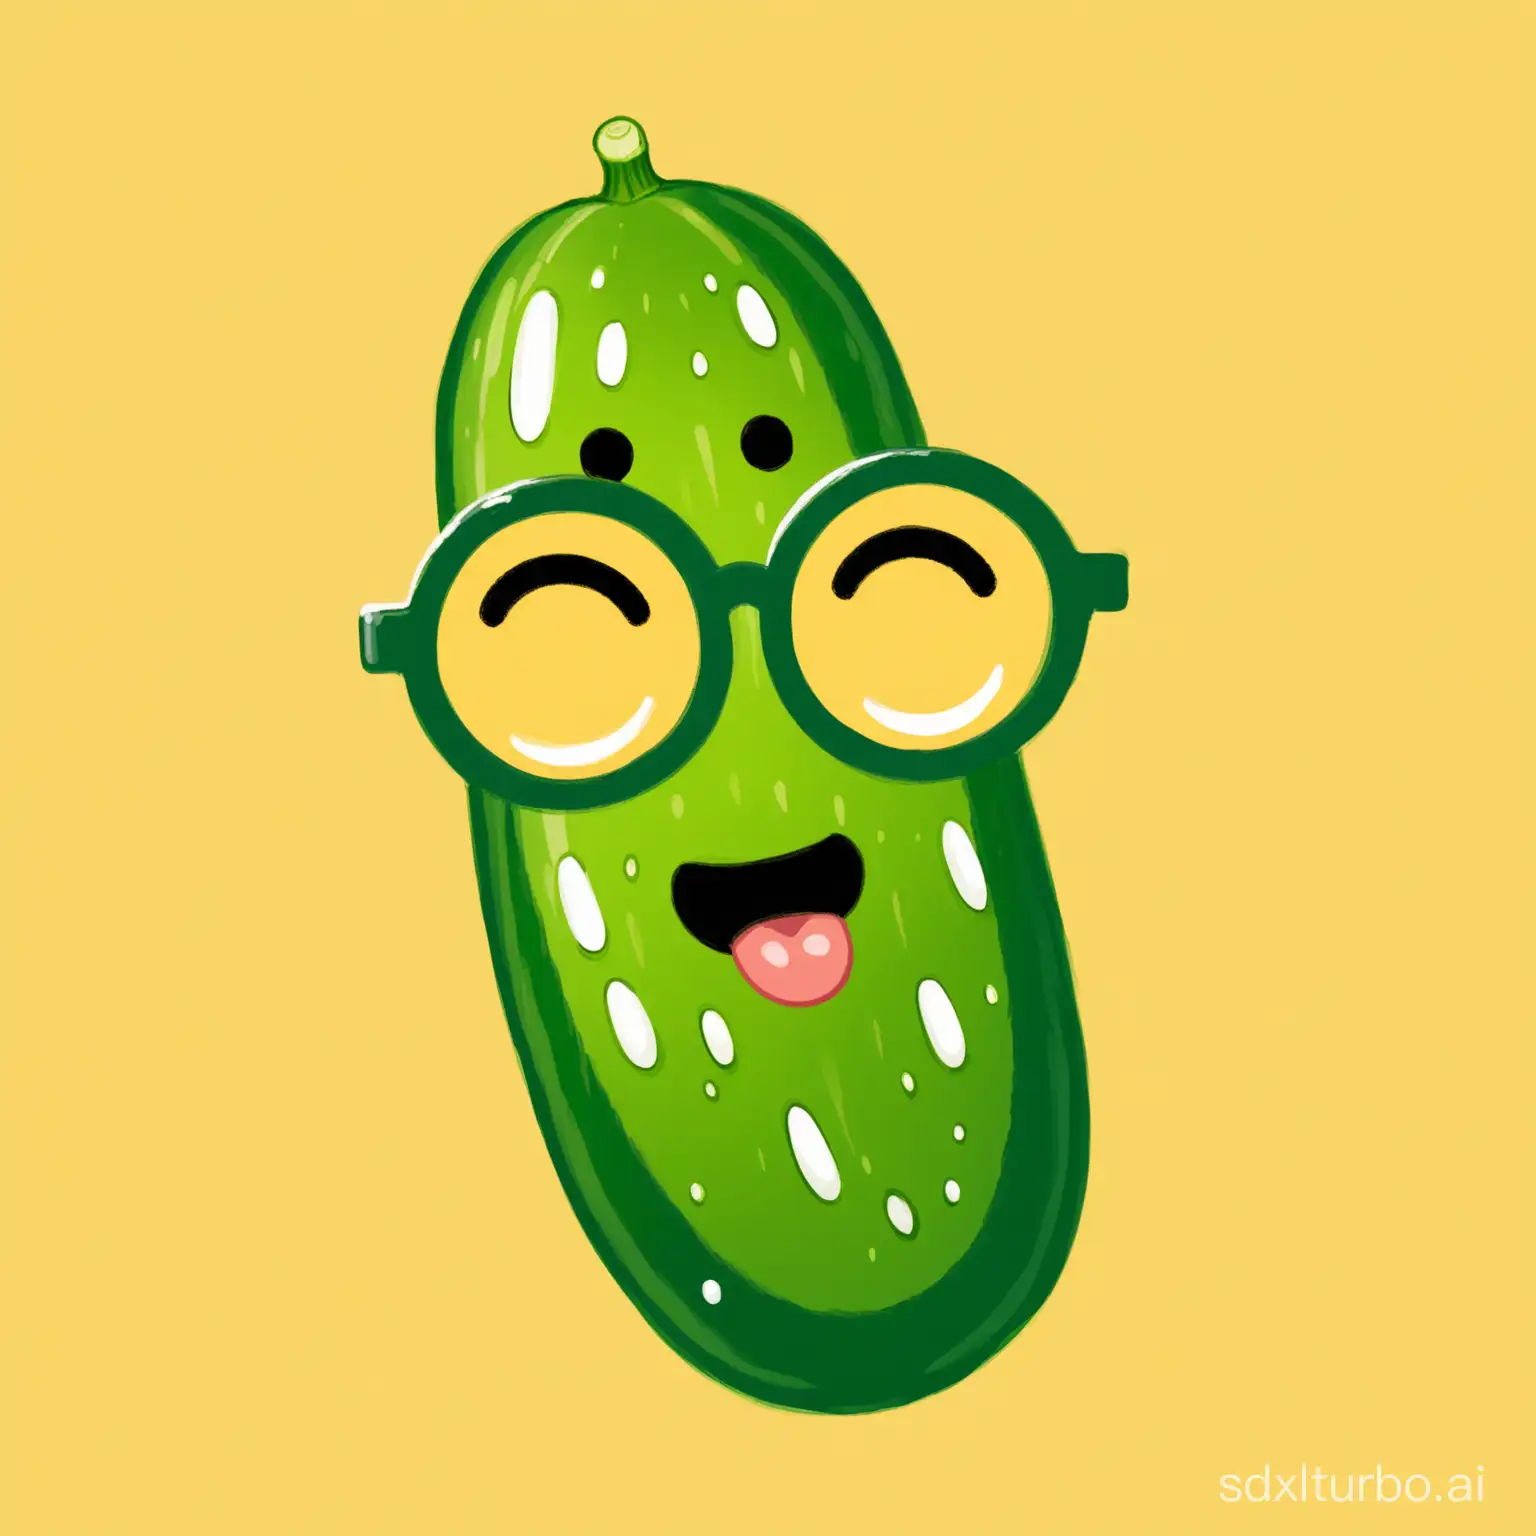 Pickled cucumber as nerd emoji, art